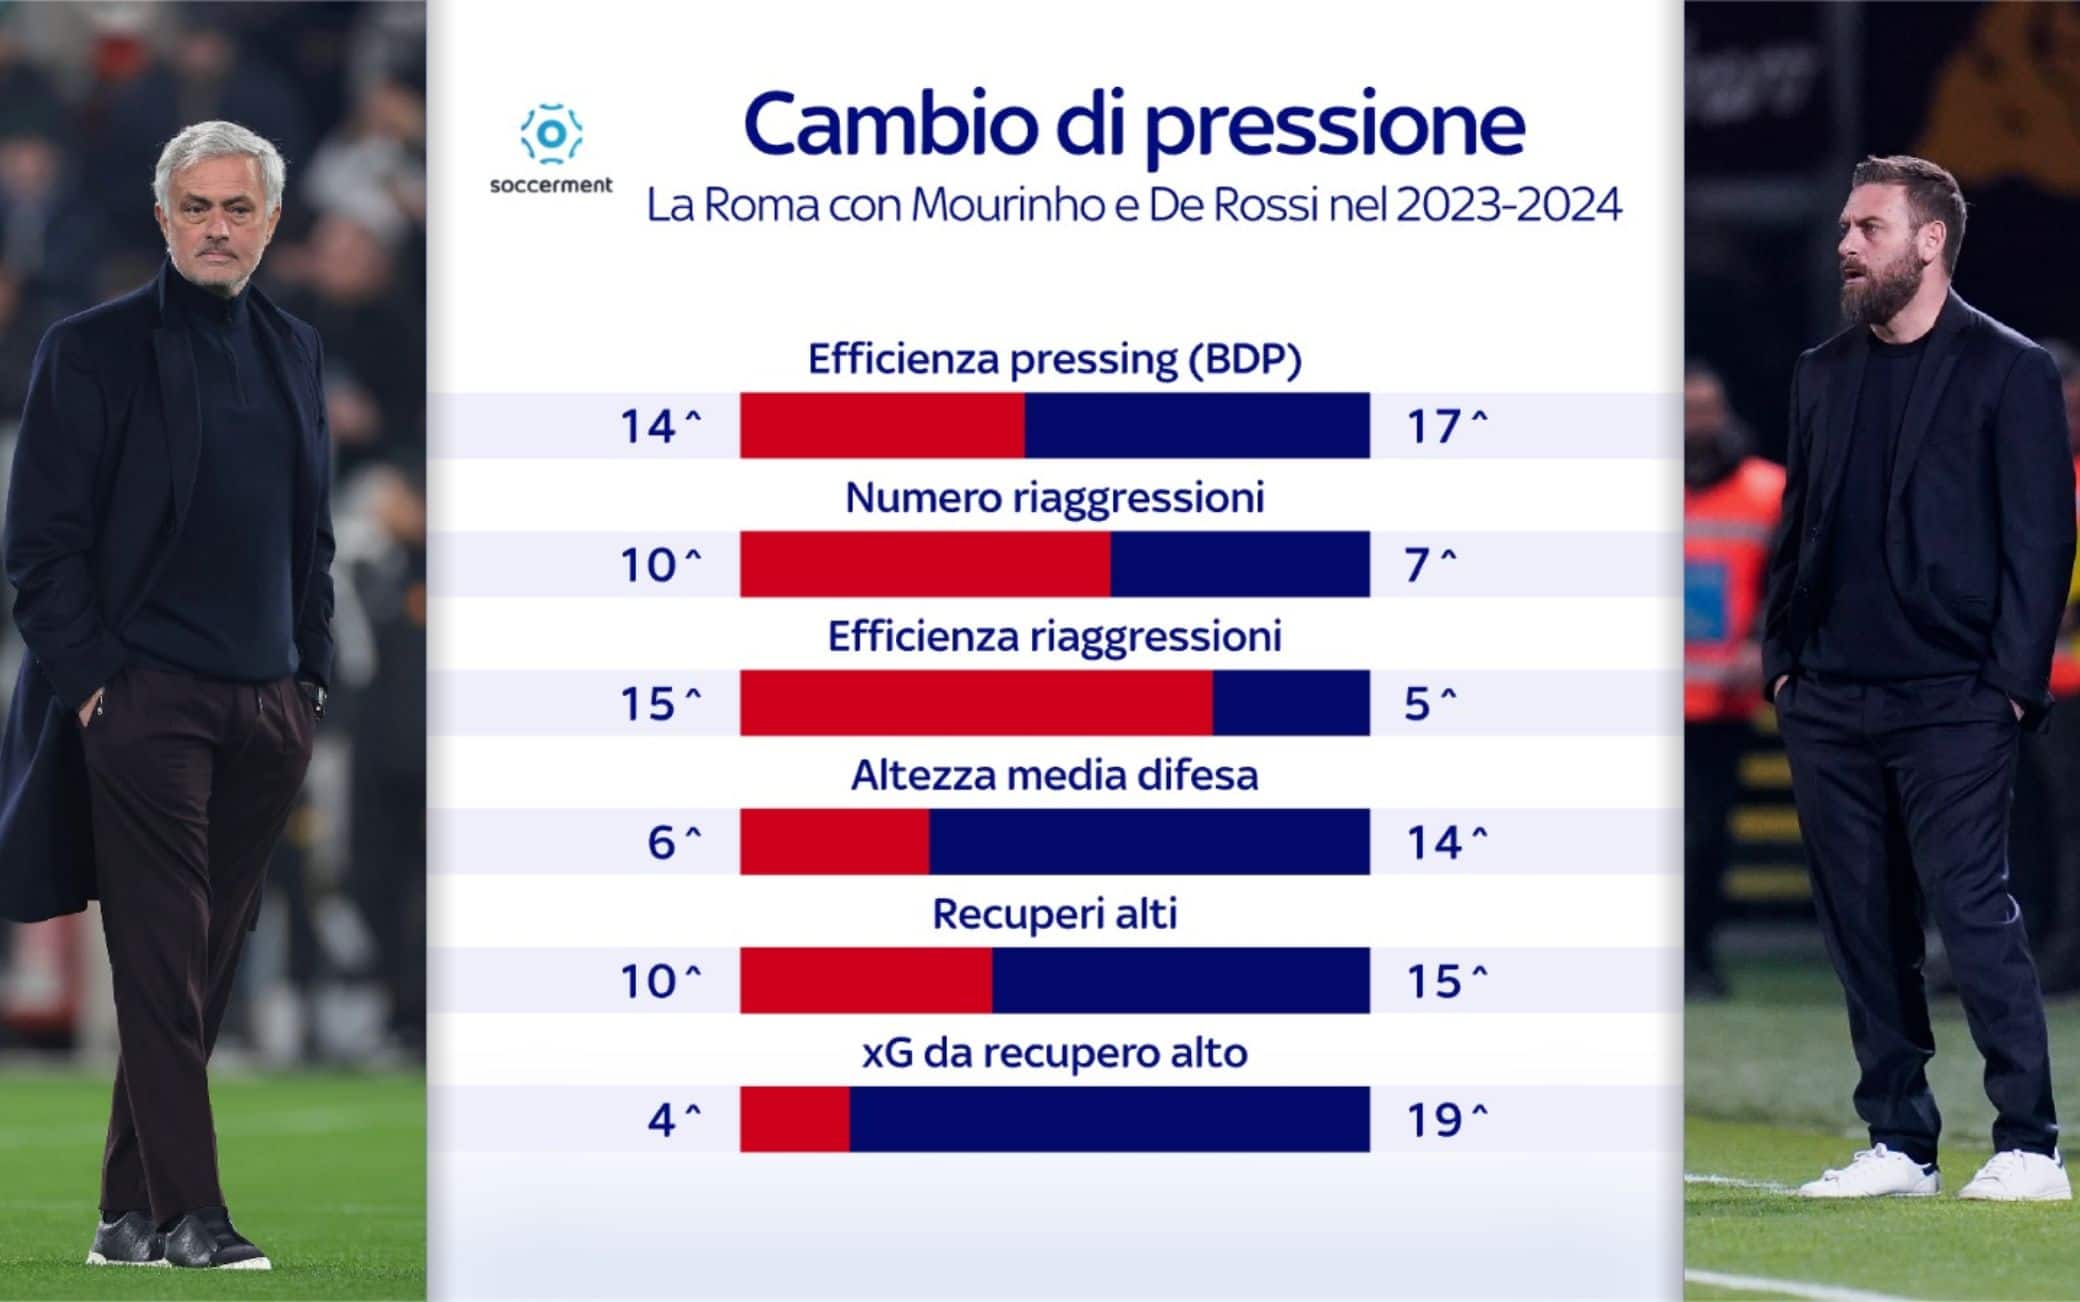 Per quanto vista molto aggressiva contro il Brighton, in una partita preparata sull'avversario, i numeri in pressione della Roma sono diversi nelle due gestioni. Quelli dell'era Mourinho avevano però numeri superiori in queste statistiche. 